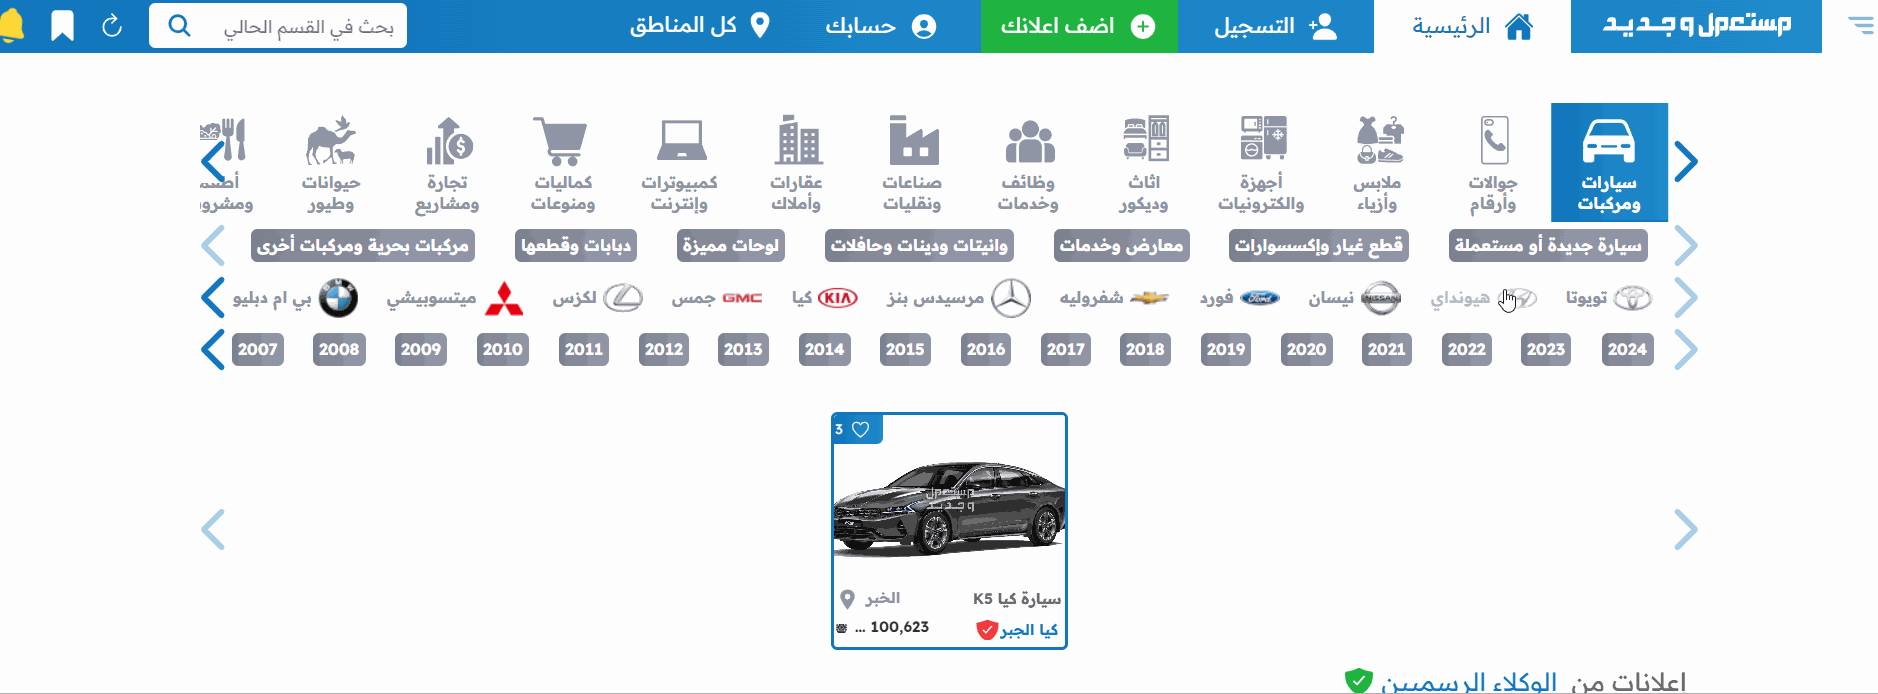 شراء هونداي 2020 مستعملة في السعودية